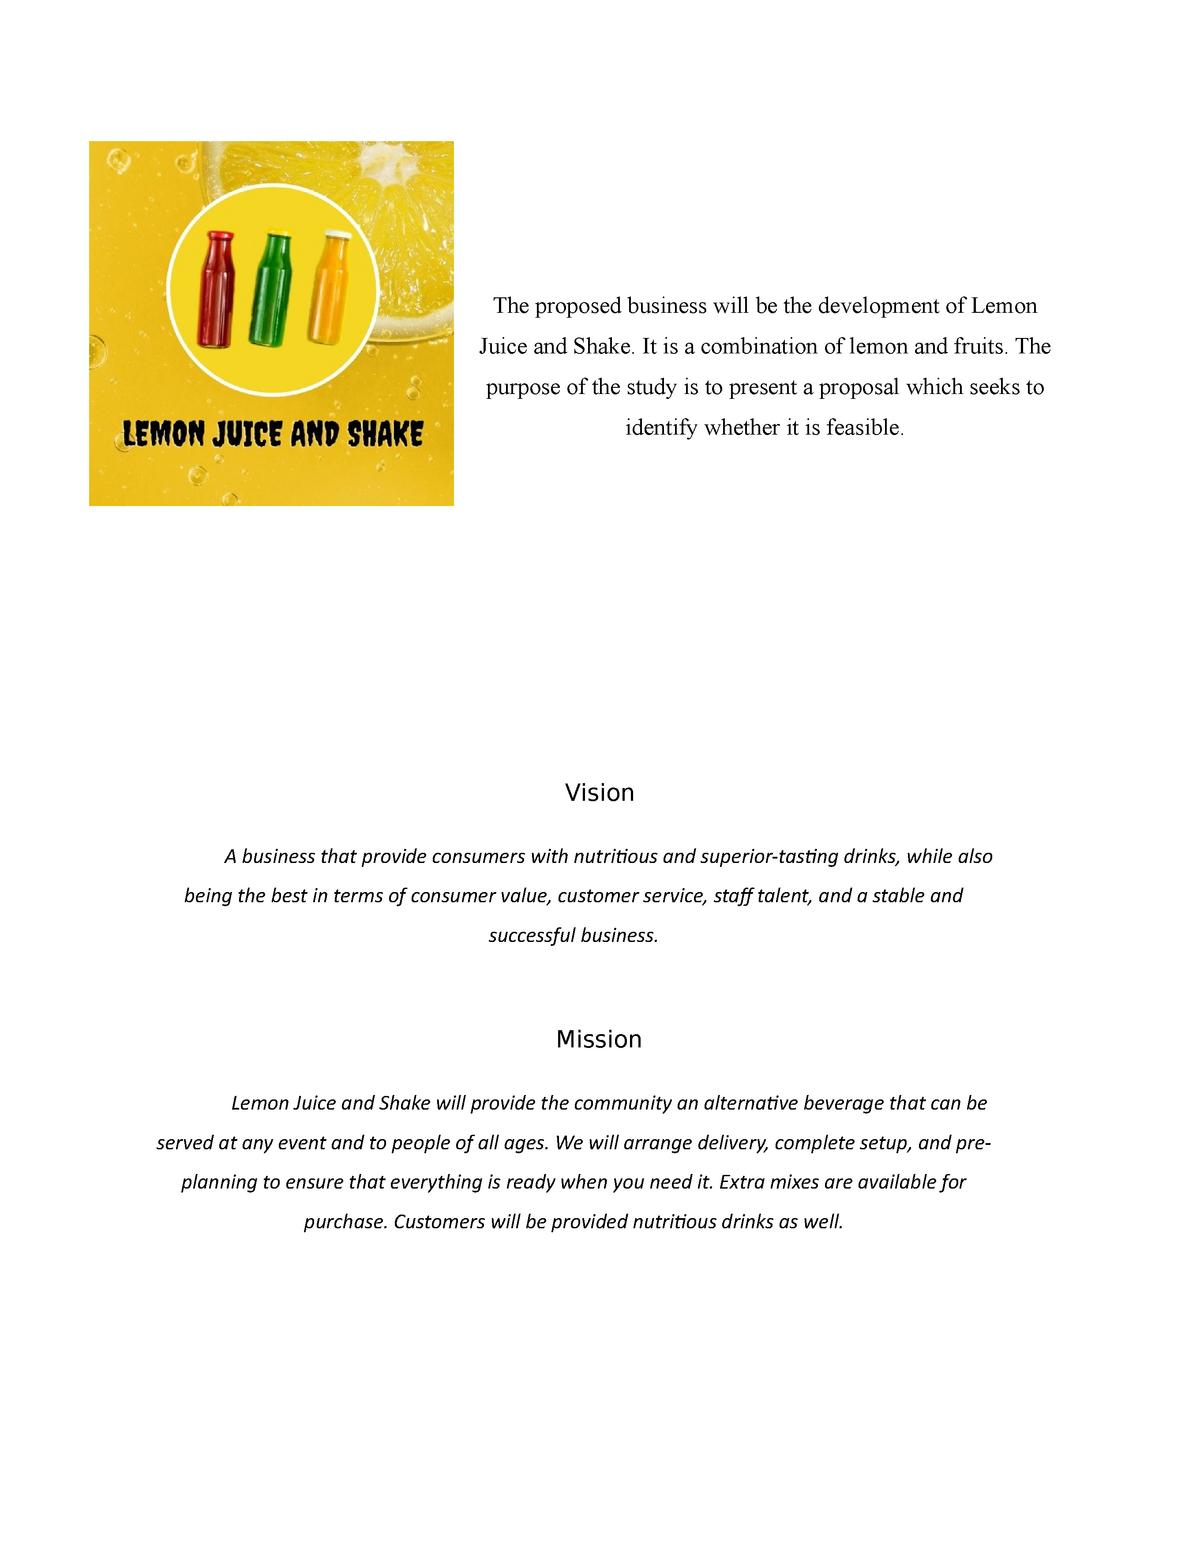 research paper about lemon juice